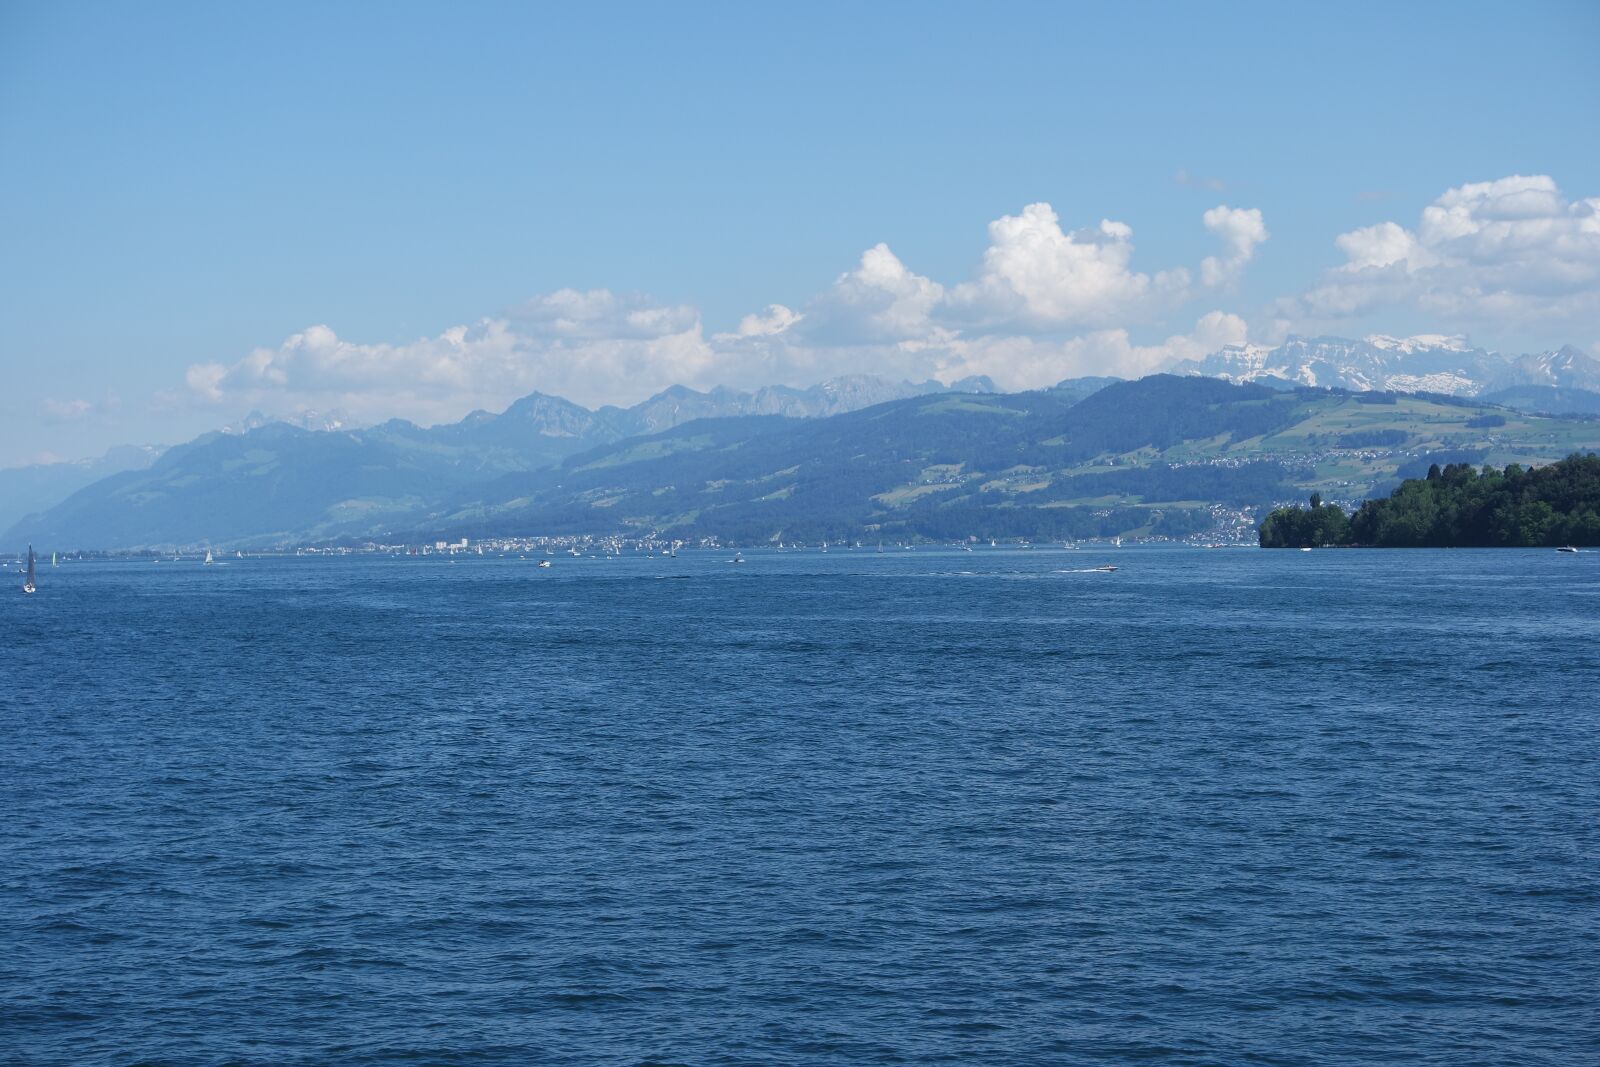 Samsung NX3000 sample photo. Zurich, lake zurich, water photography